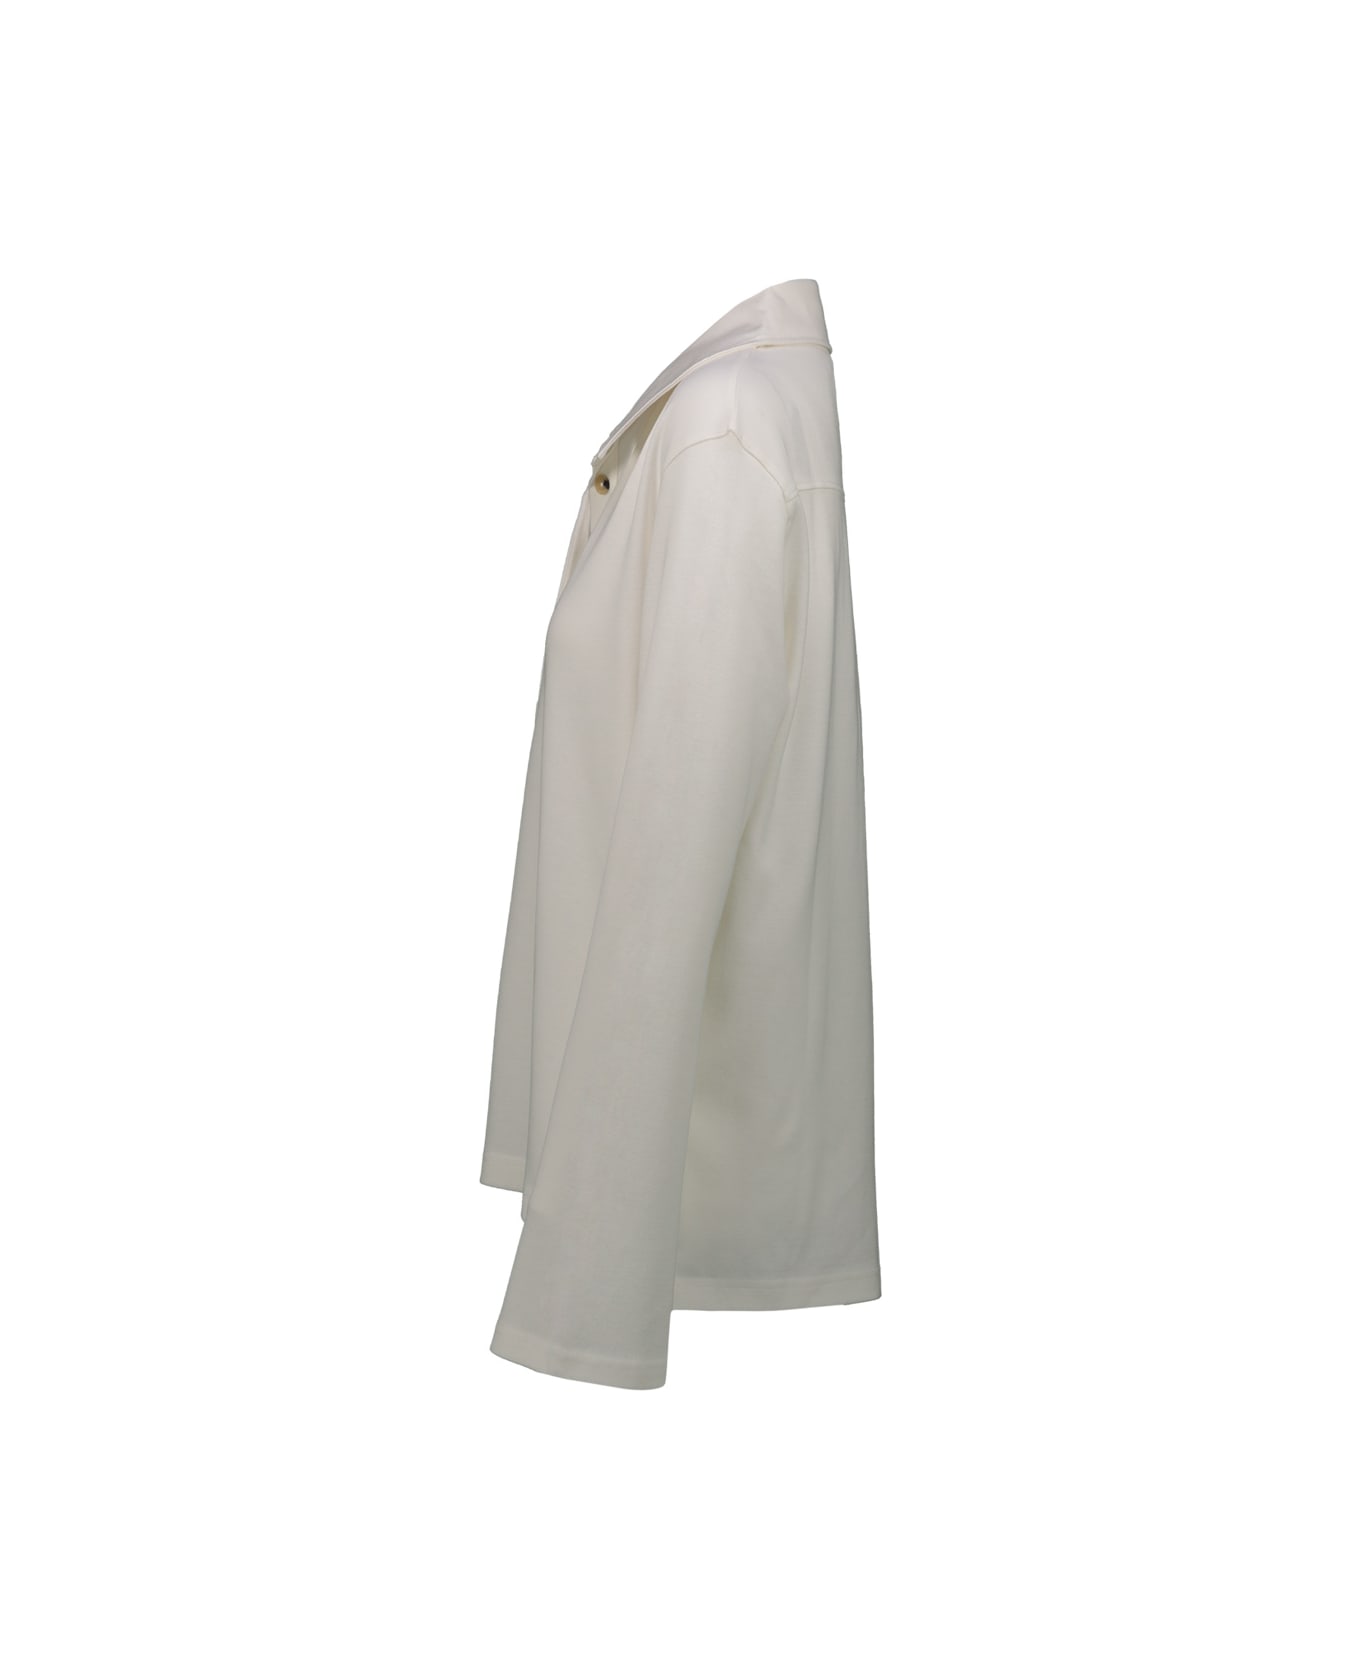 Courrèges Piqué Polo Shirt - Off White ポロシャツ